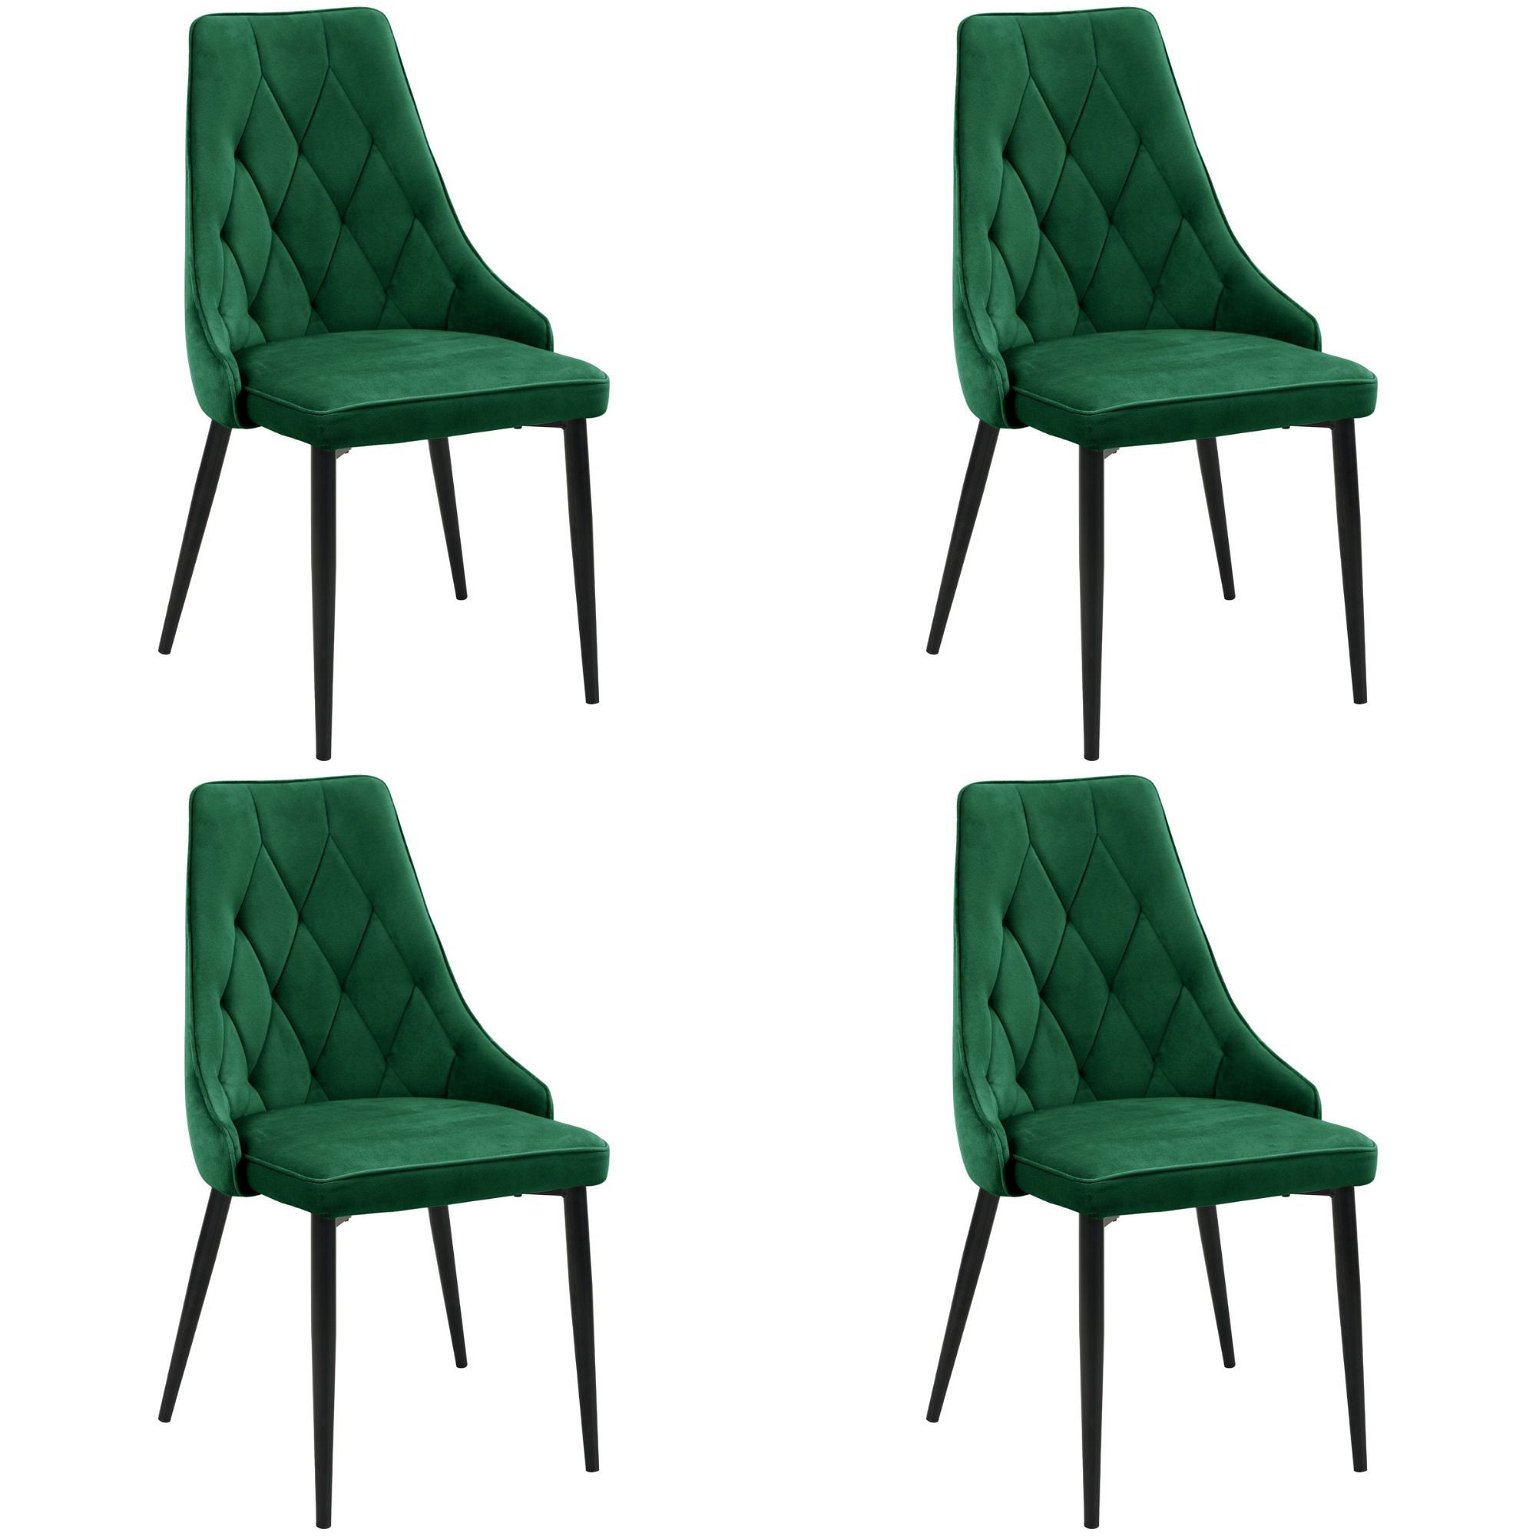 4-ių kėdžių komplektas SJ.054, žalia